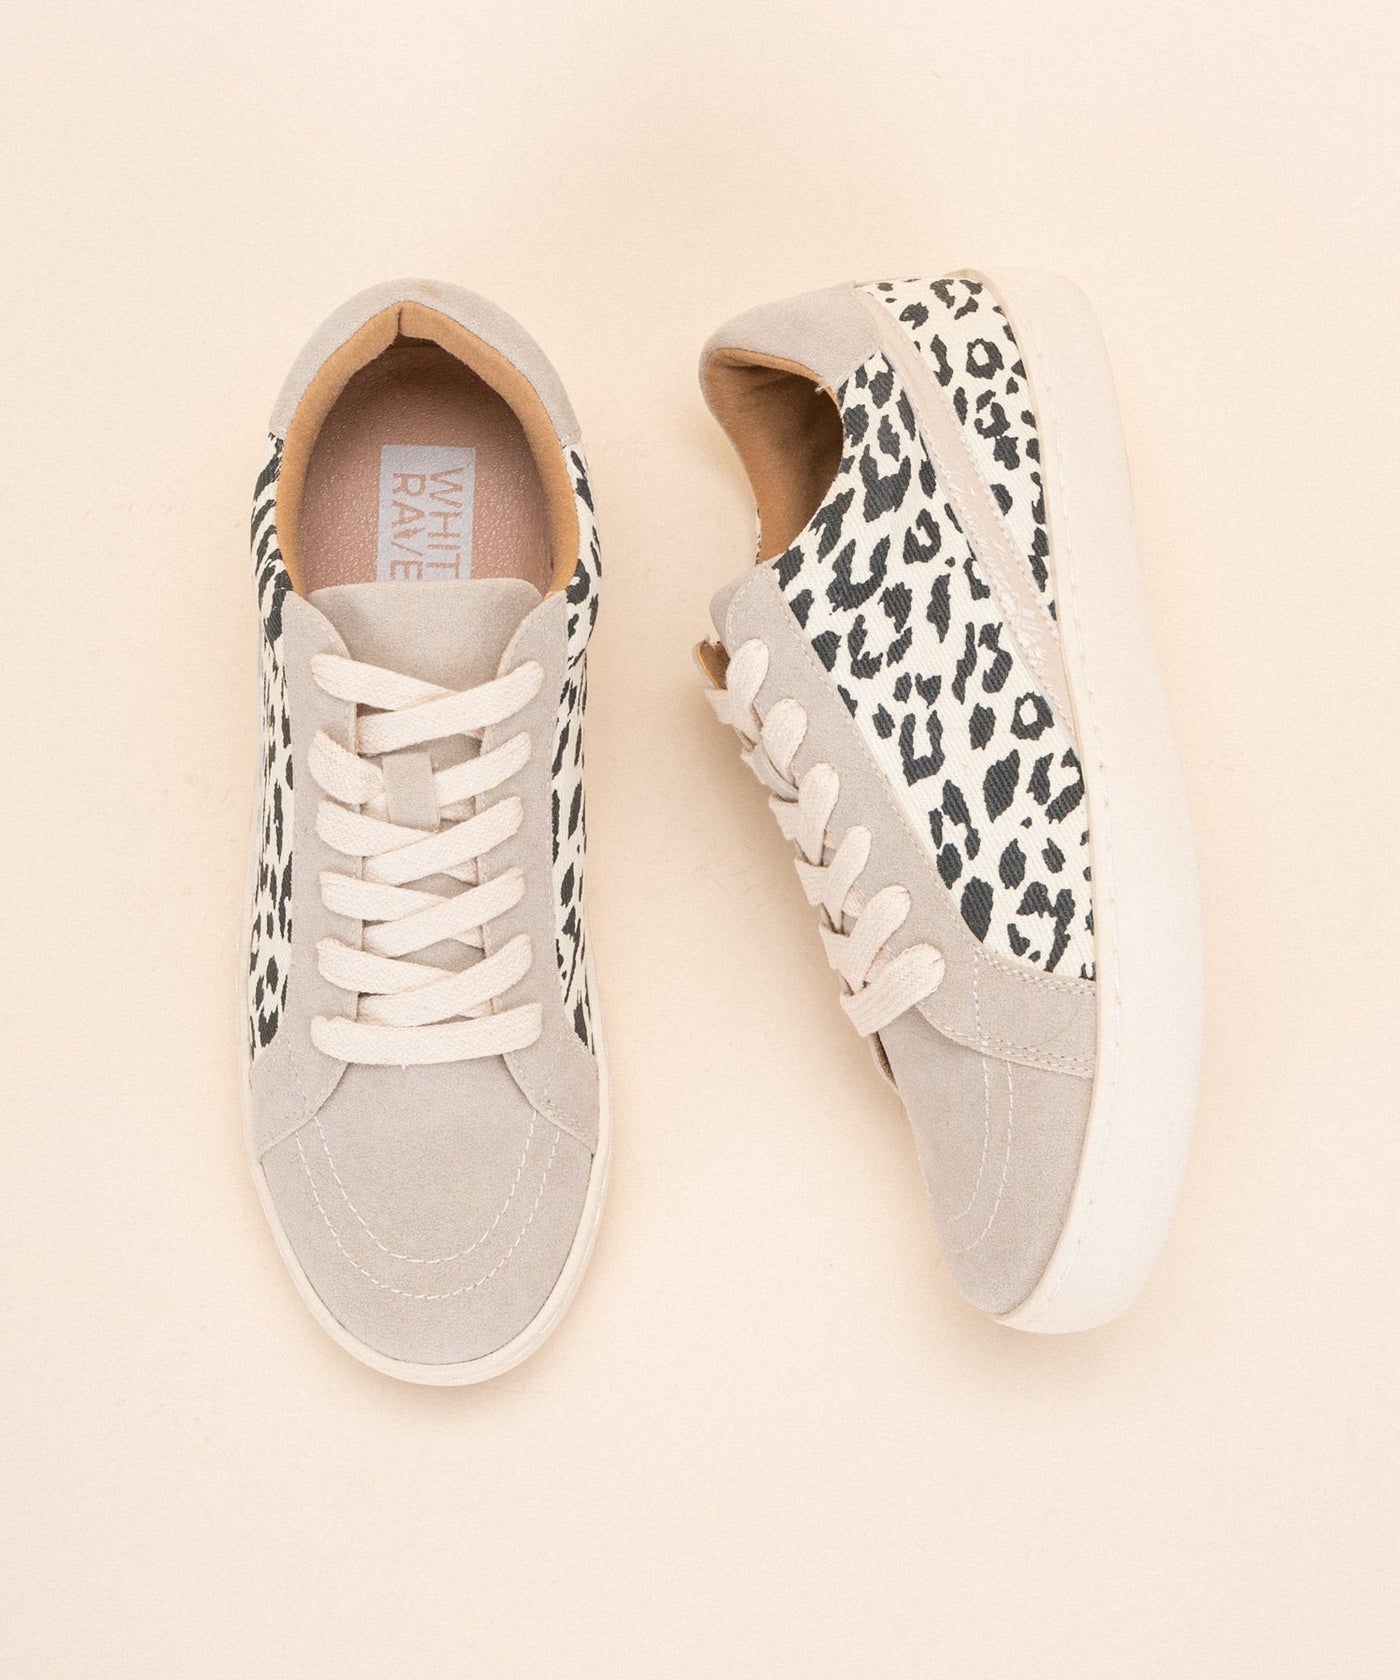 Jordan-Beige Leopard Lowtop Sneaker-Dakotas Boutique